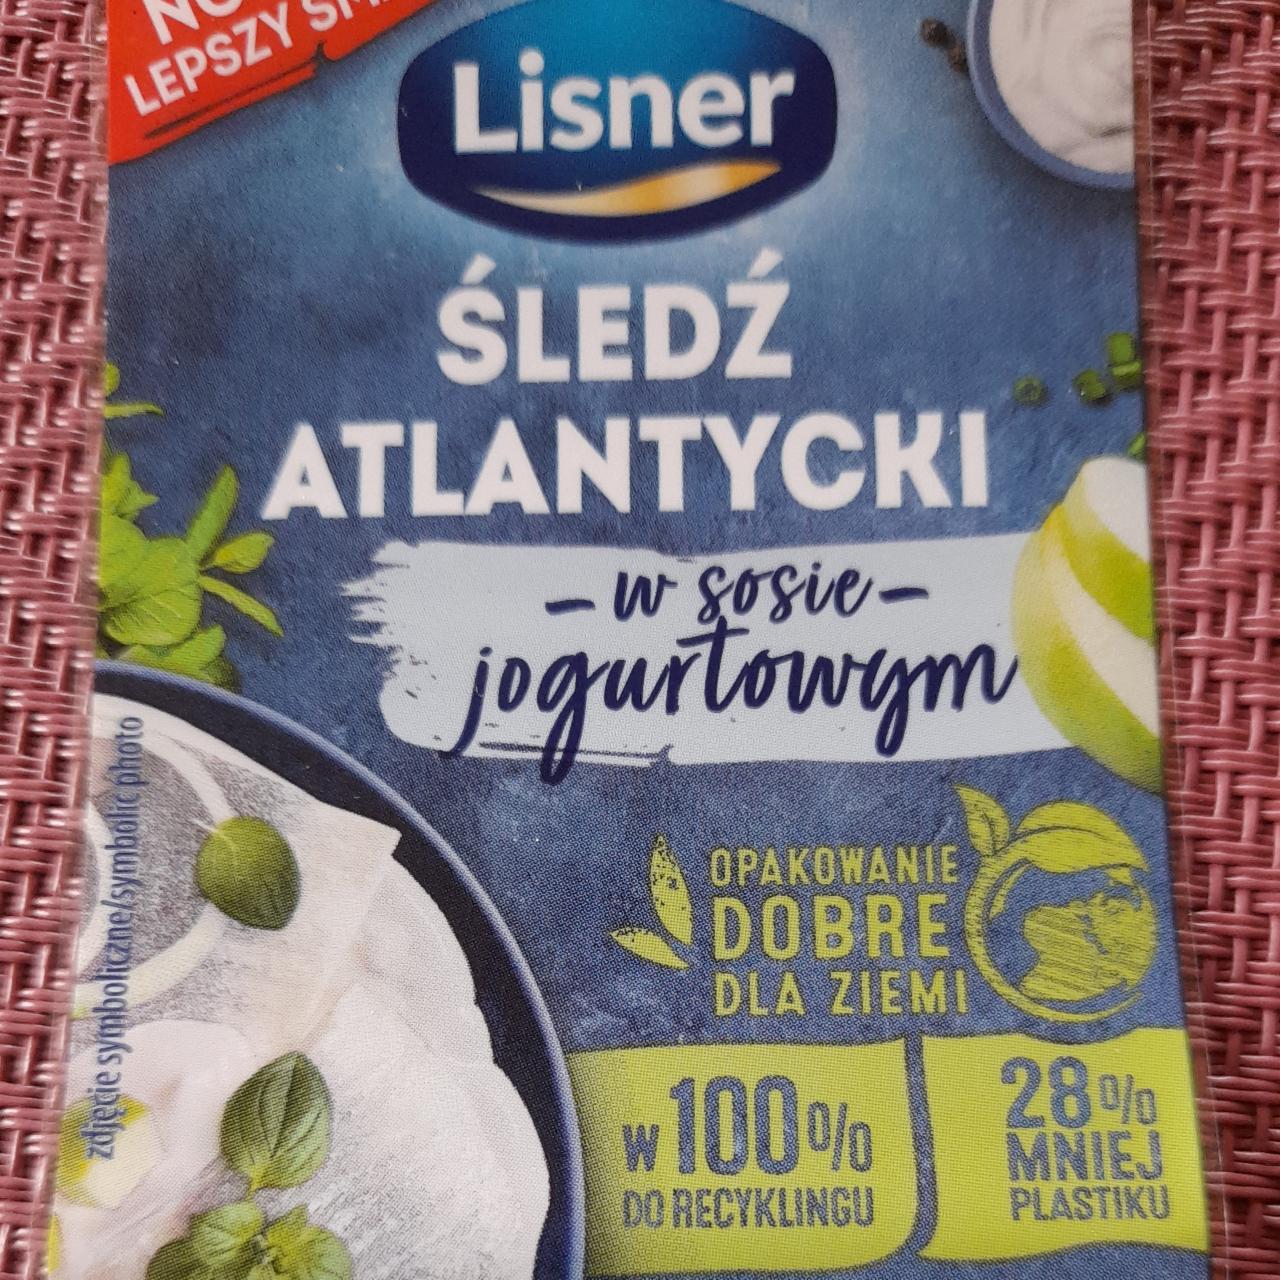 Fotografie - Śledź atlantycki w sosie jogurtowym Lisner